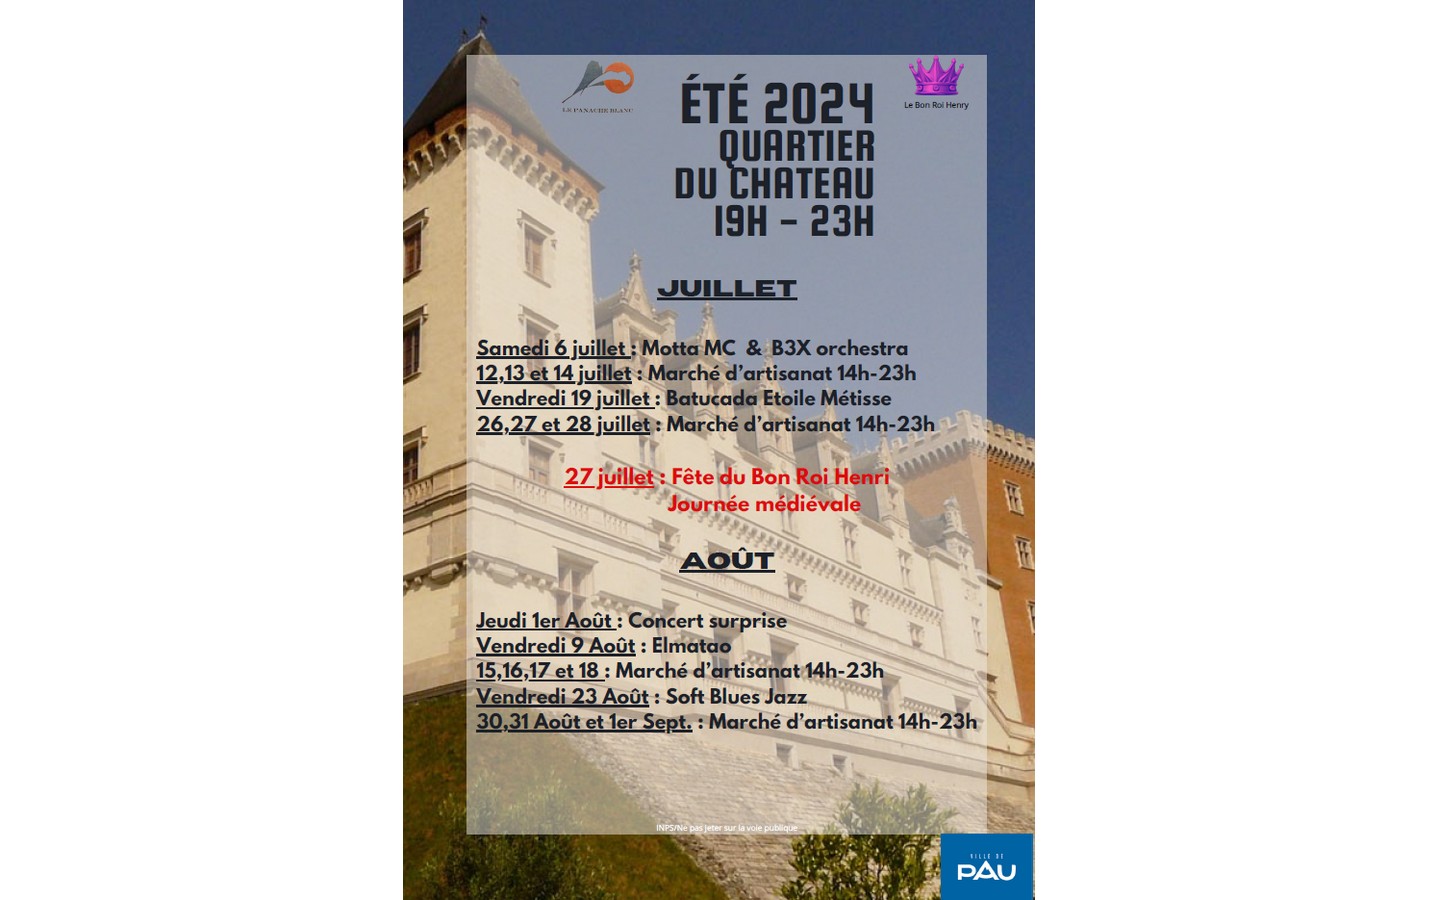 Eté 2024 - Quartier du château - Concert Elmatao